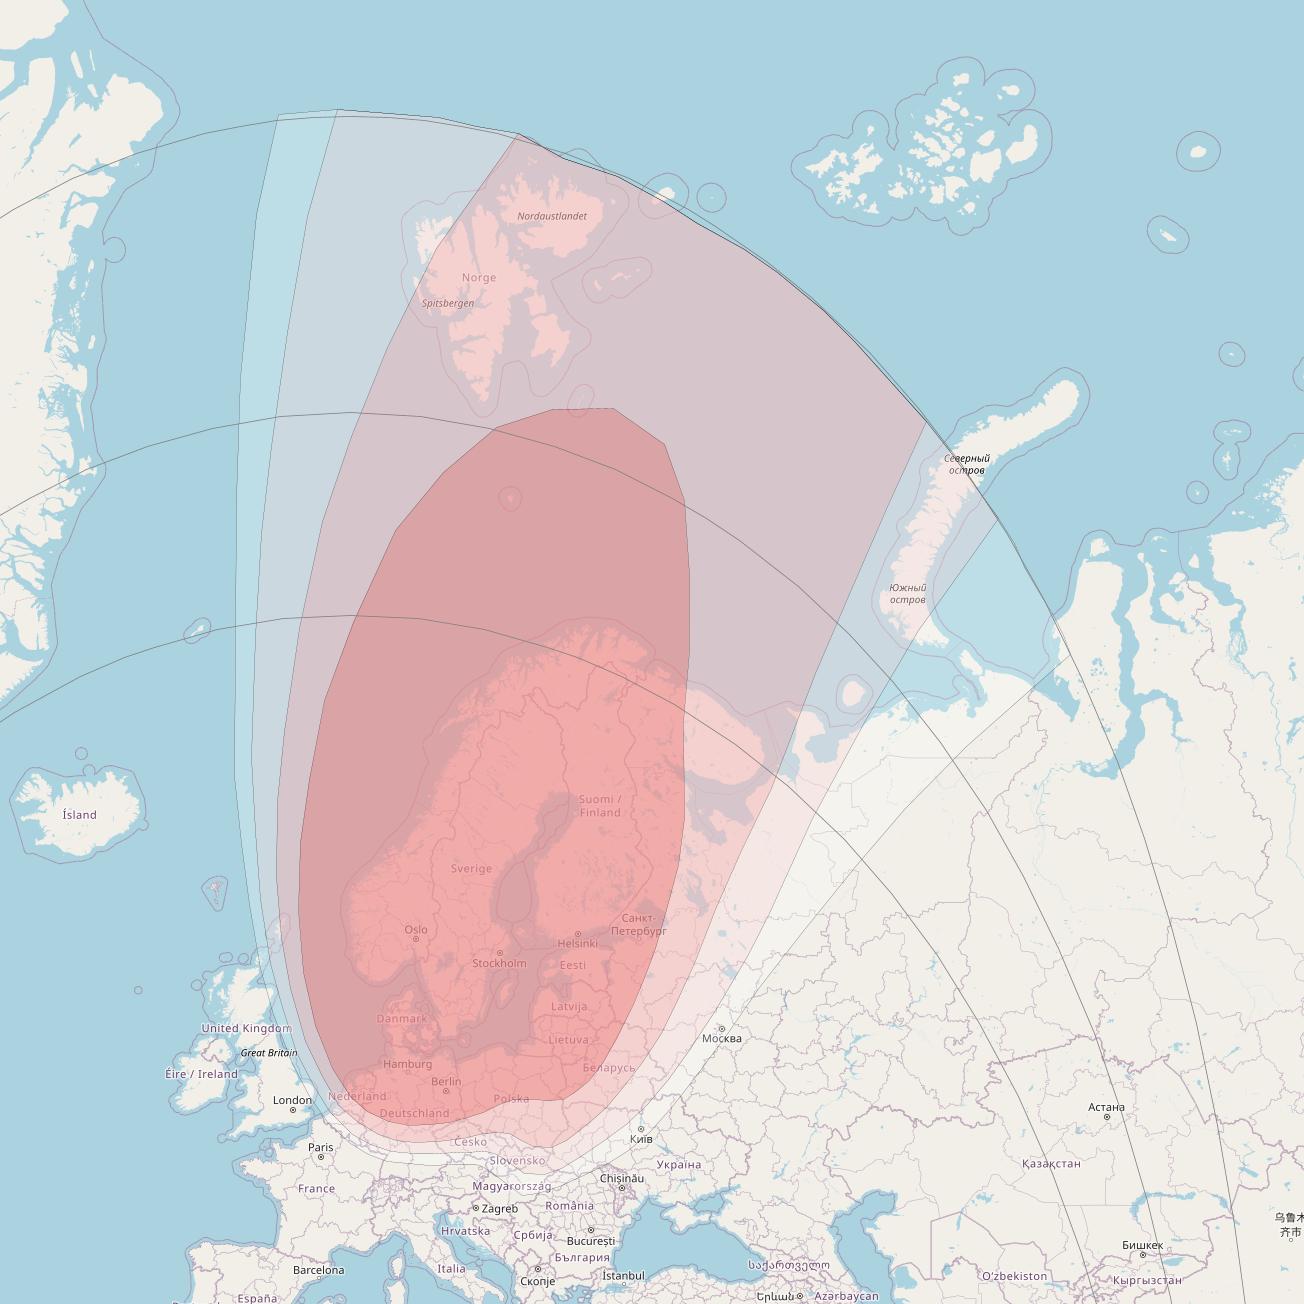 SES 5 at 5° E downlink Ku-band Nordic beam coverage map